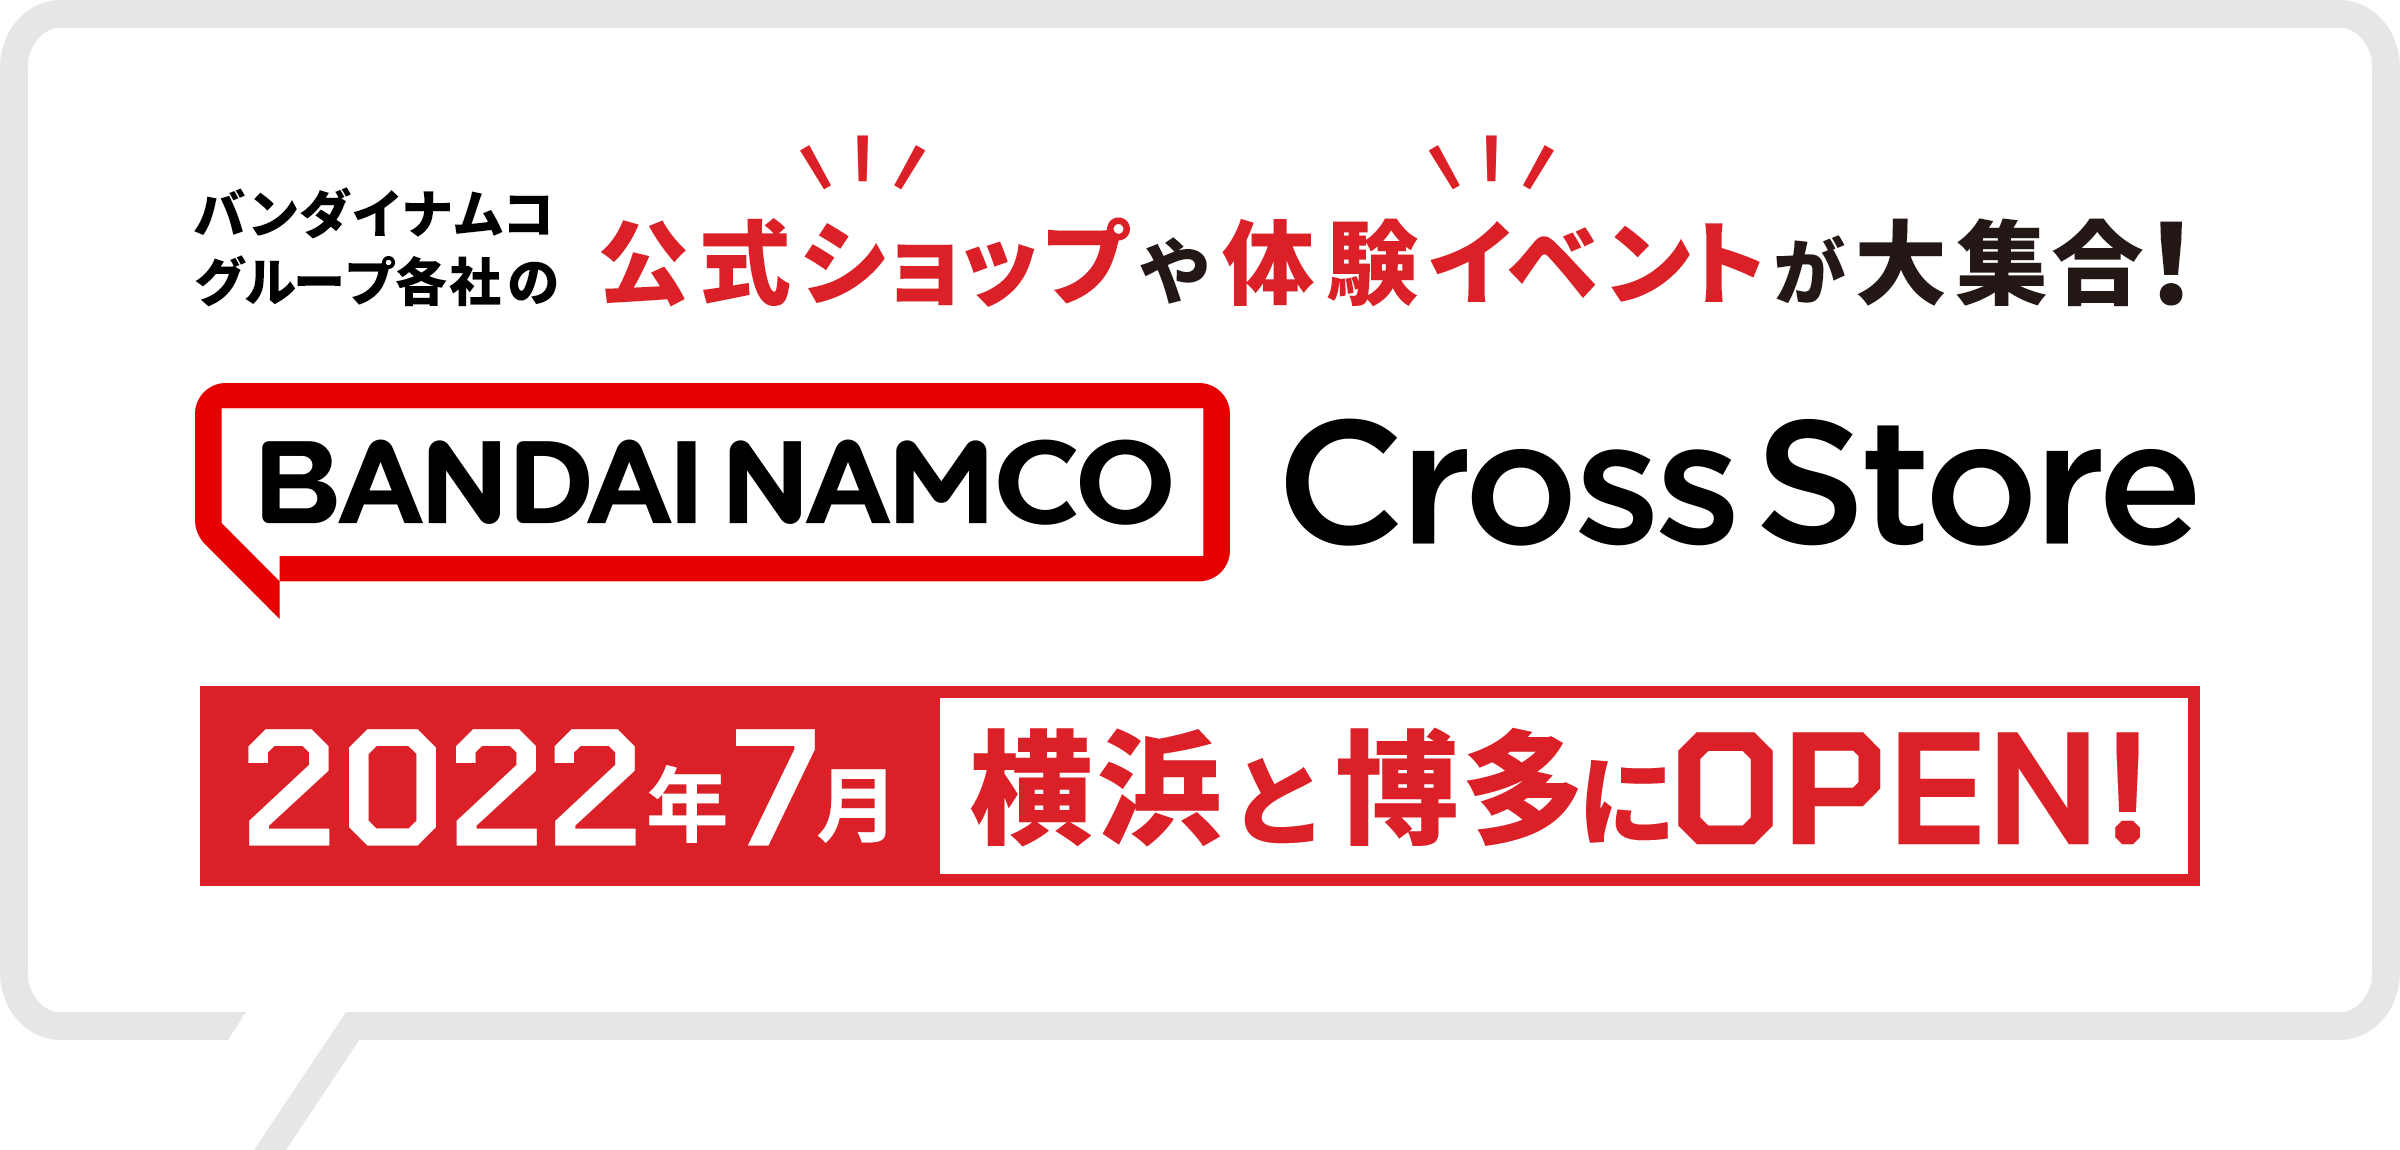 バンダイナムコグループ各社の公式ショップや体験イベントが大集合！「バンダイナムコ Cross Store」2022年7月 横浜と博多にOPEN!